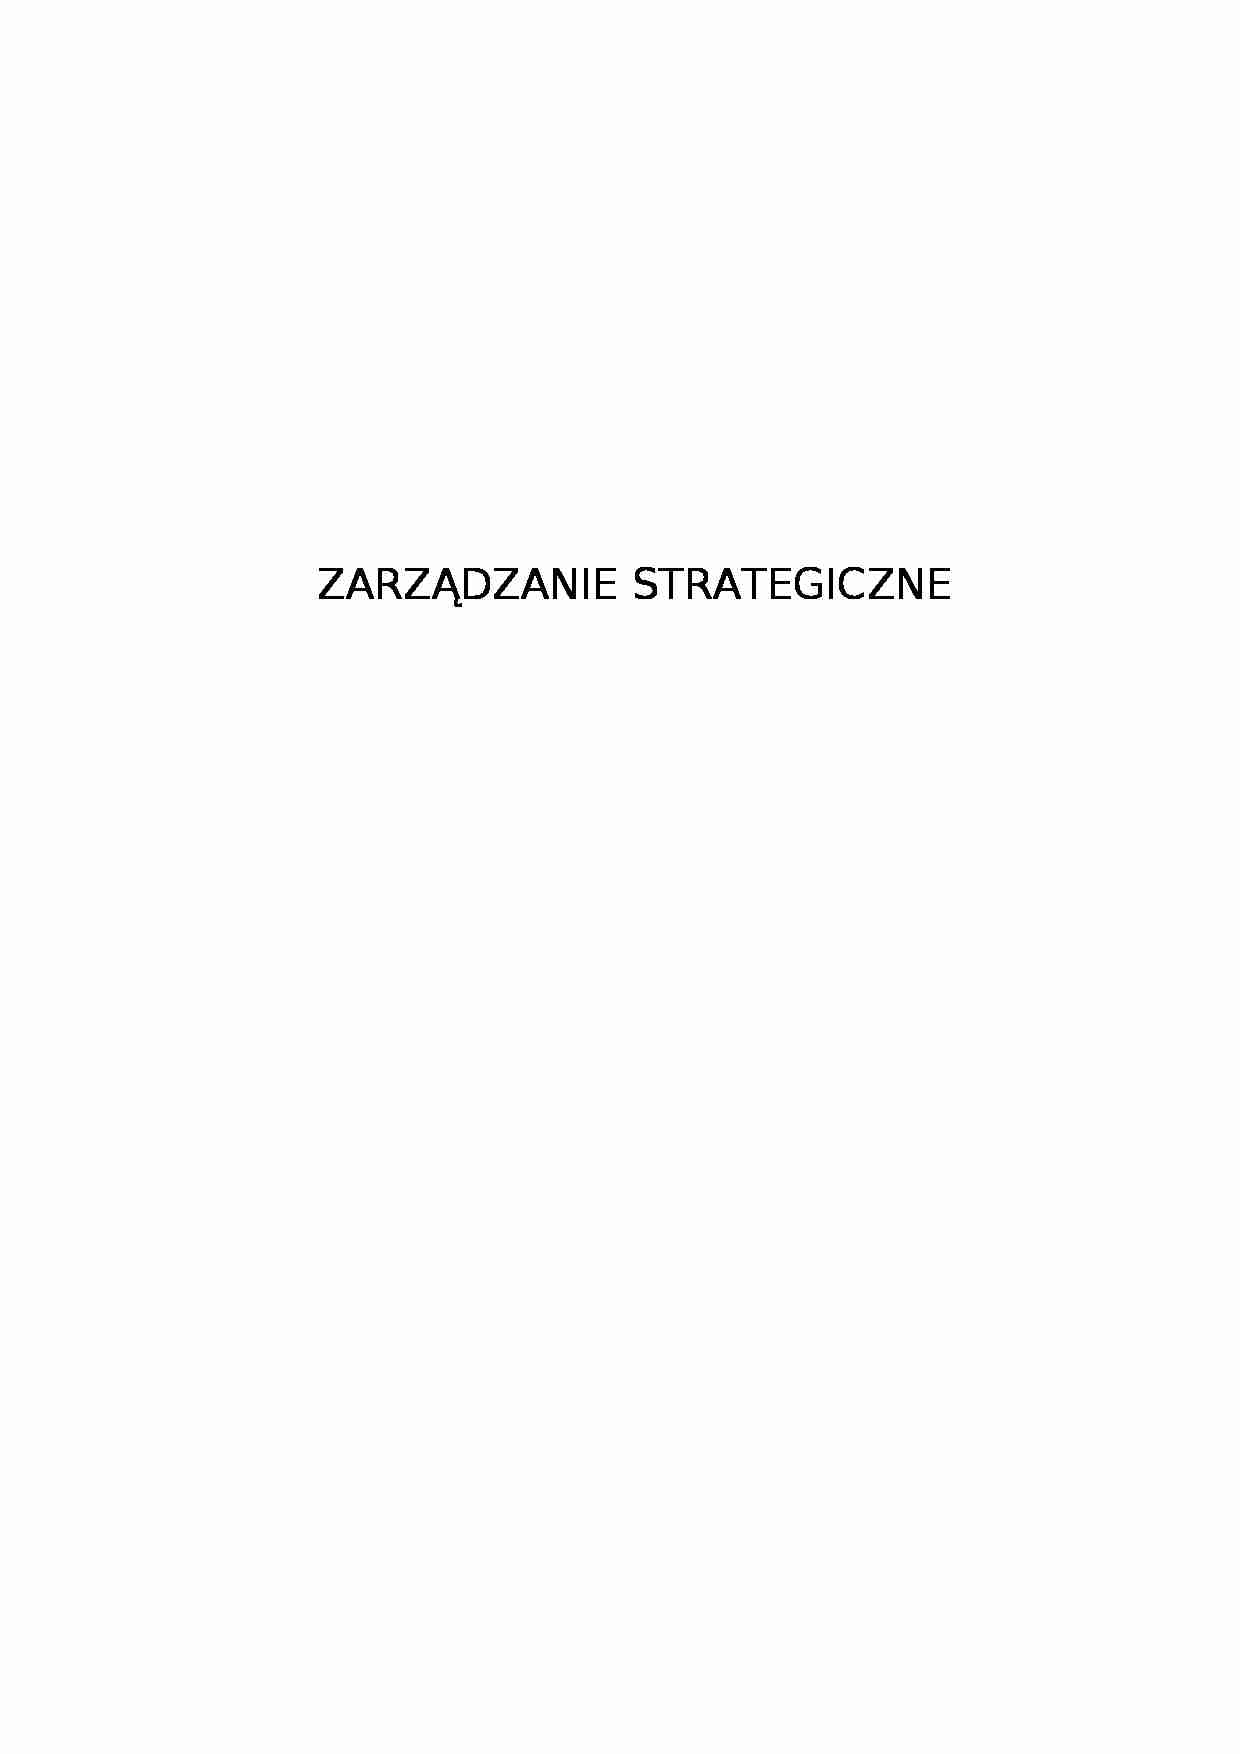 Zarządzanie strategiczne - strona 1